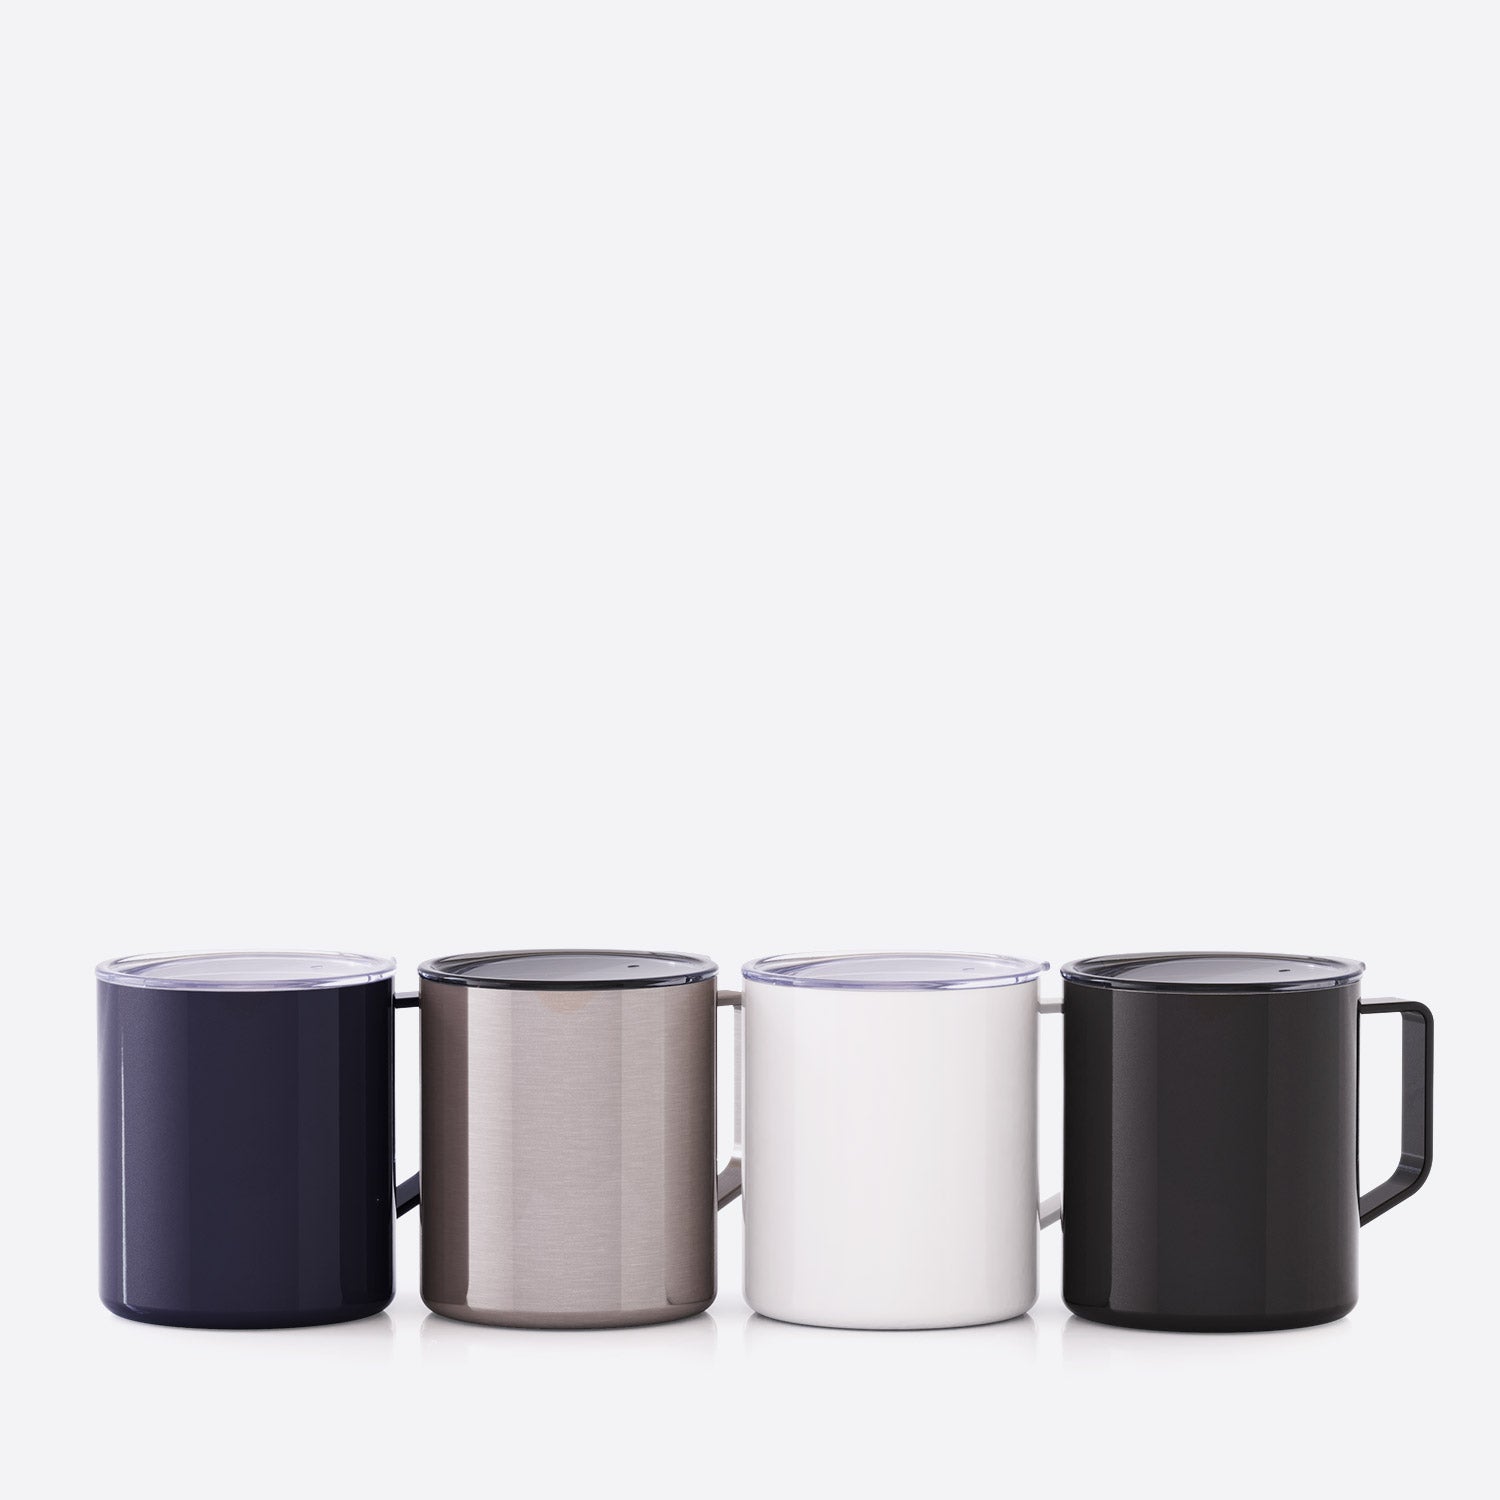 http://maarsdrinkware.com/cdn/shop/products/maars-townie-14-oz-stainless-steel-mug-group-3.jpg?v=1679081536